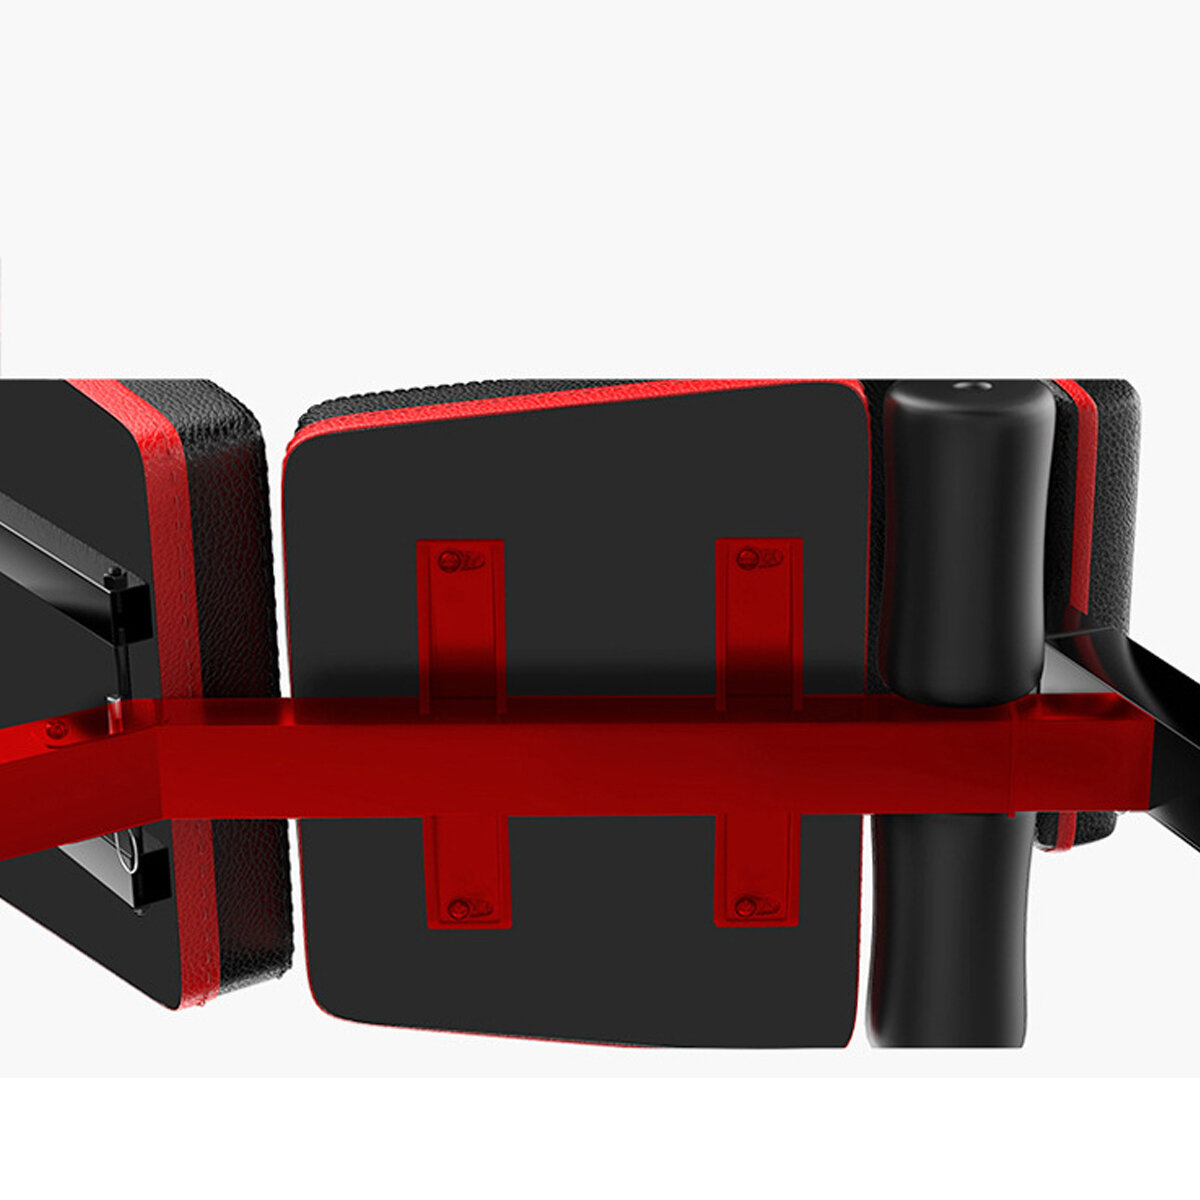 5 in1折りたたみ式ホームダンベルシットアップスツールウェイトベンチ調節可能な腹筋トレーニングボードスポーツフィットネスエクササイズツール機器